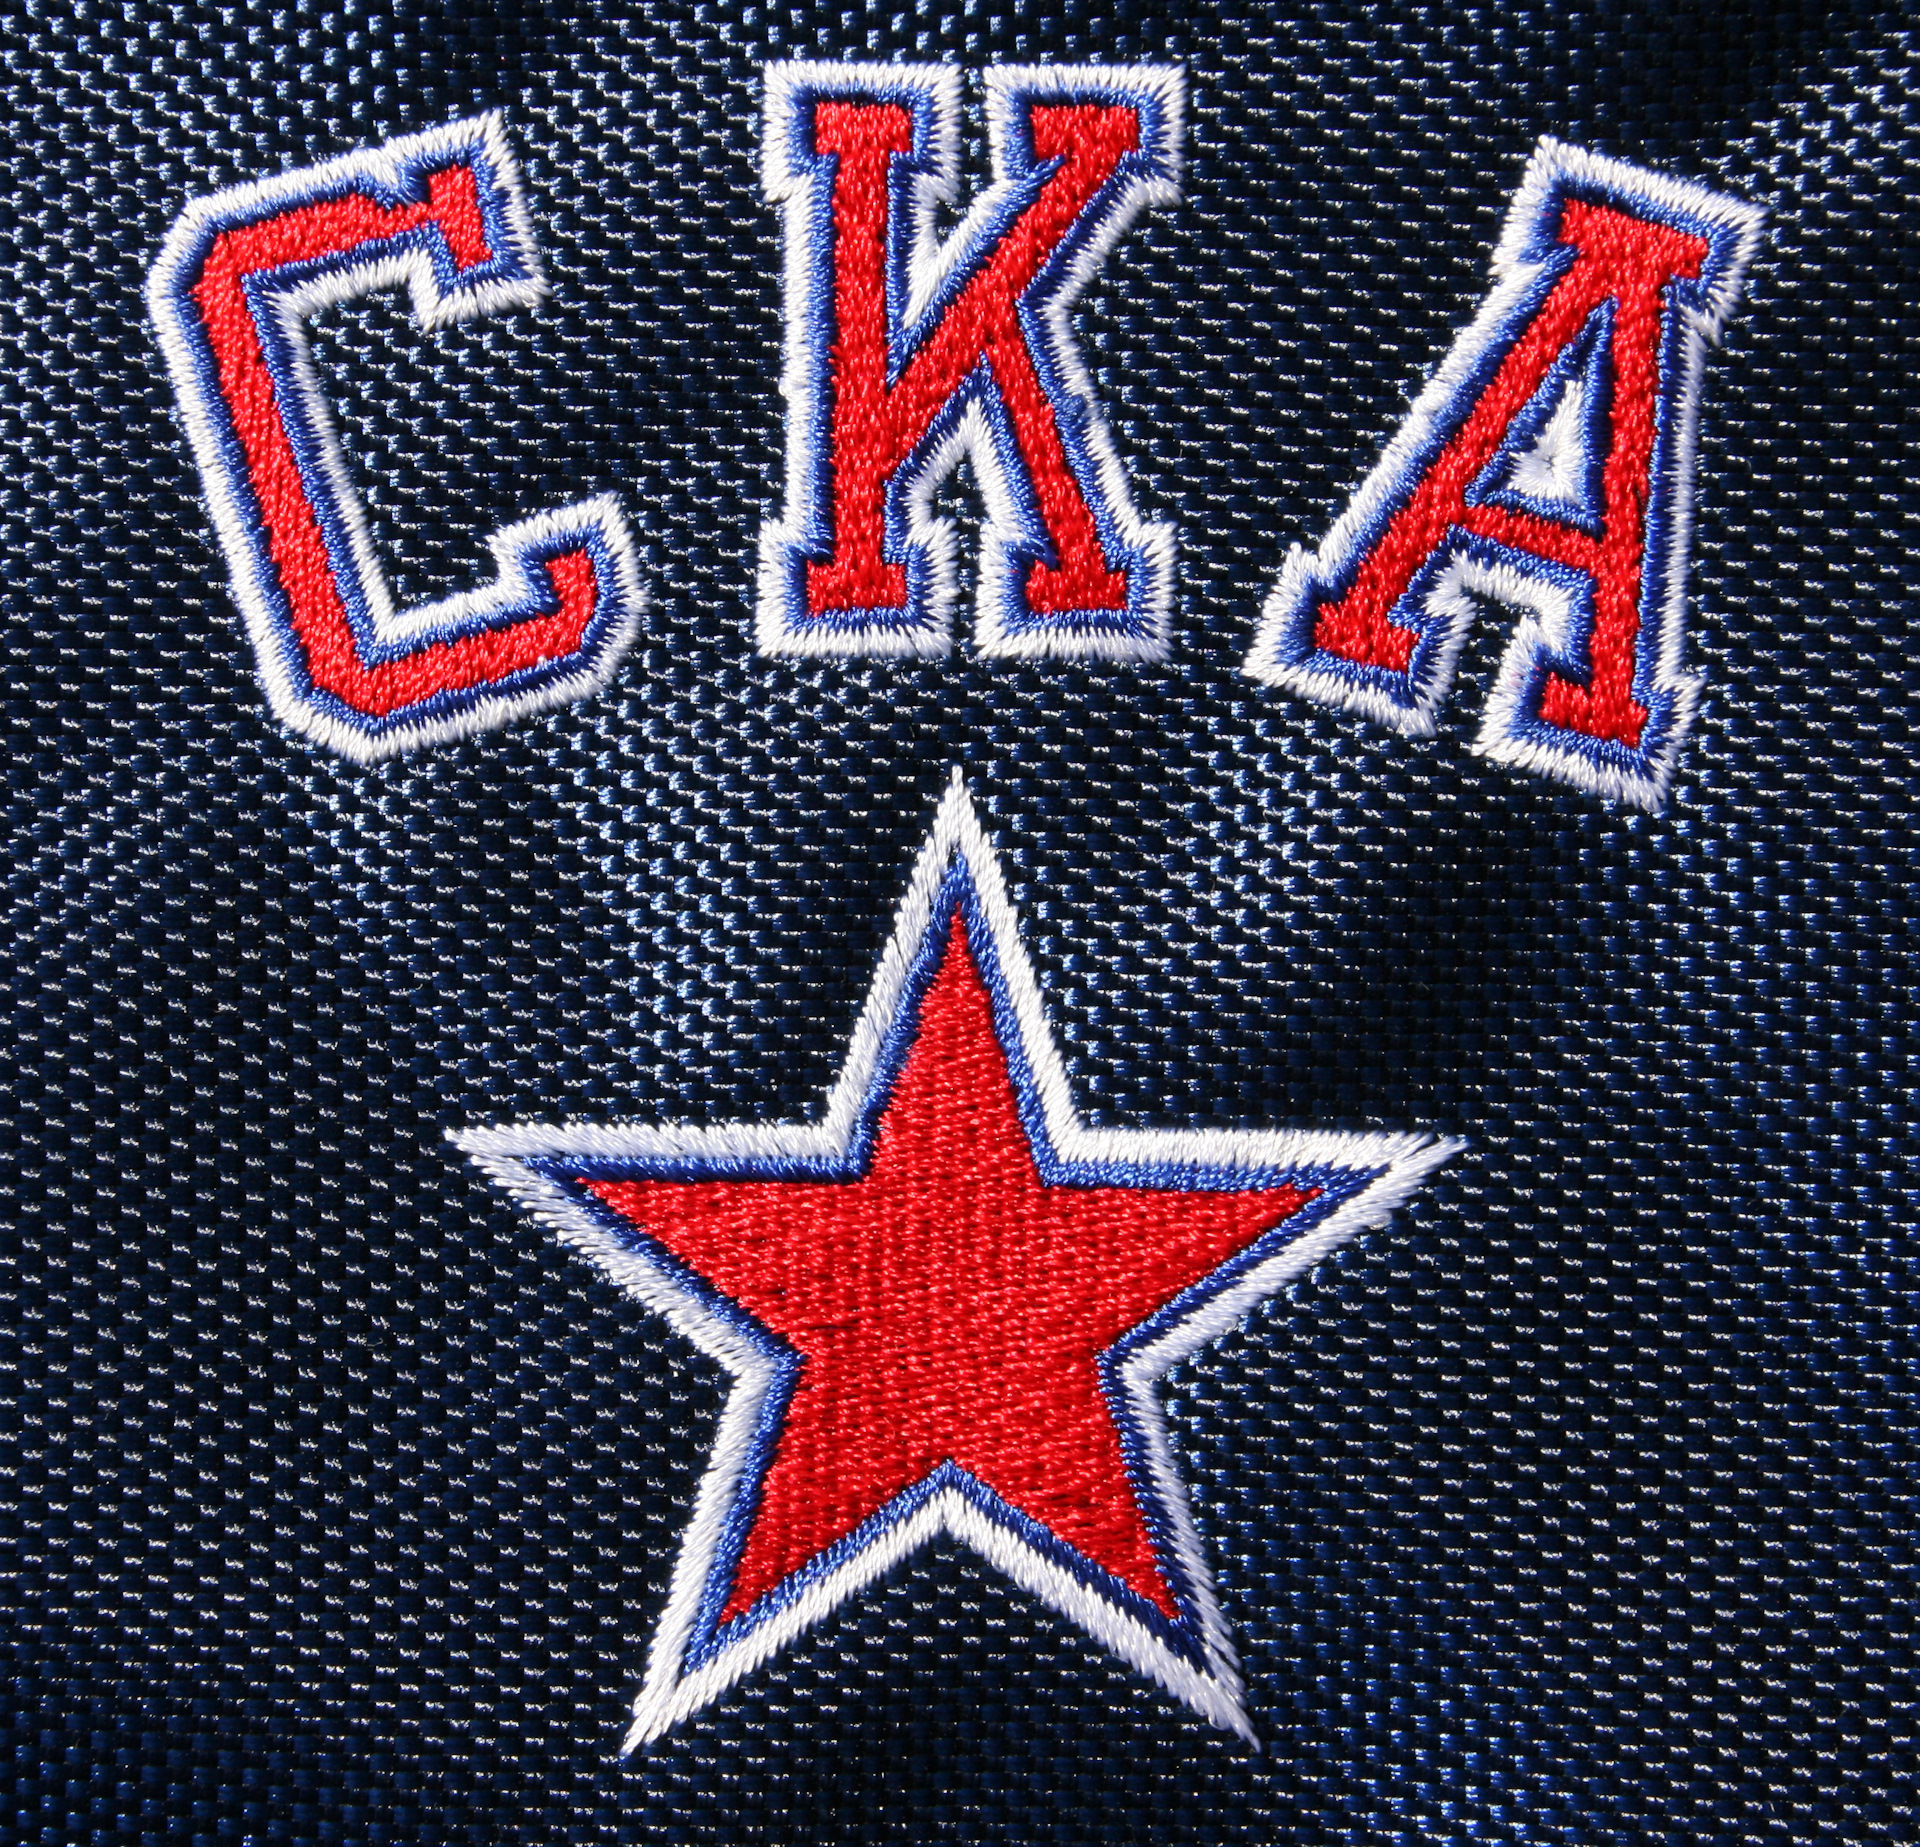 Ска спонсоры. Хоккейныйклюб СКА лого. Хк СКА Санкт-Петербург лого. СКА Питер хоккей. СКА хоккейный клуб эмблема.